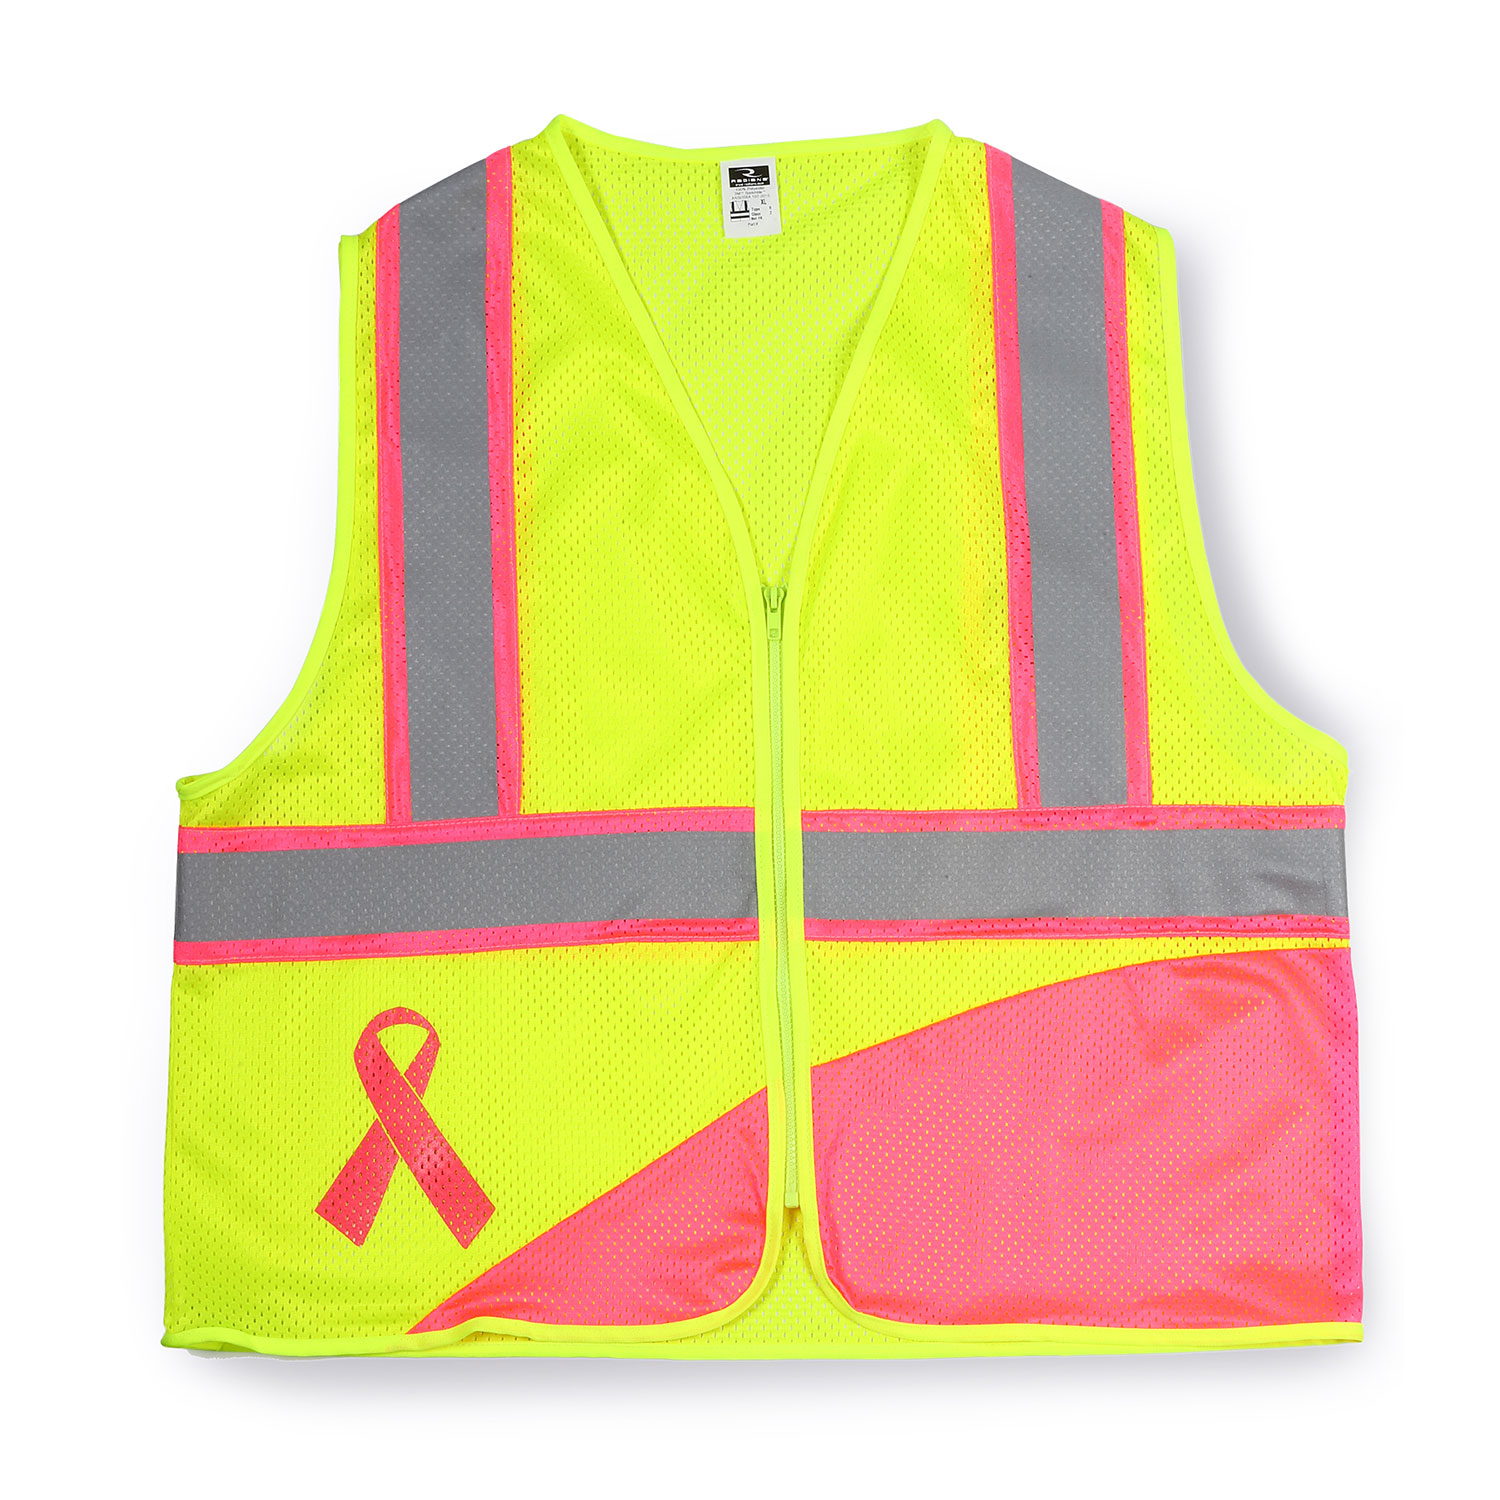 Radians ANSI II Breast Cancer Awareness Safety Vest